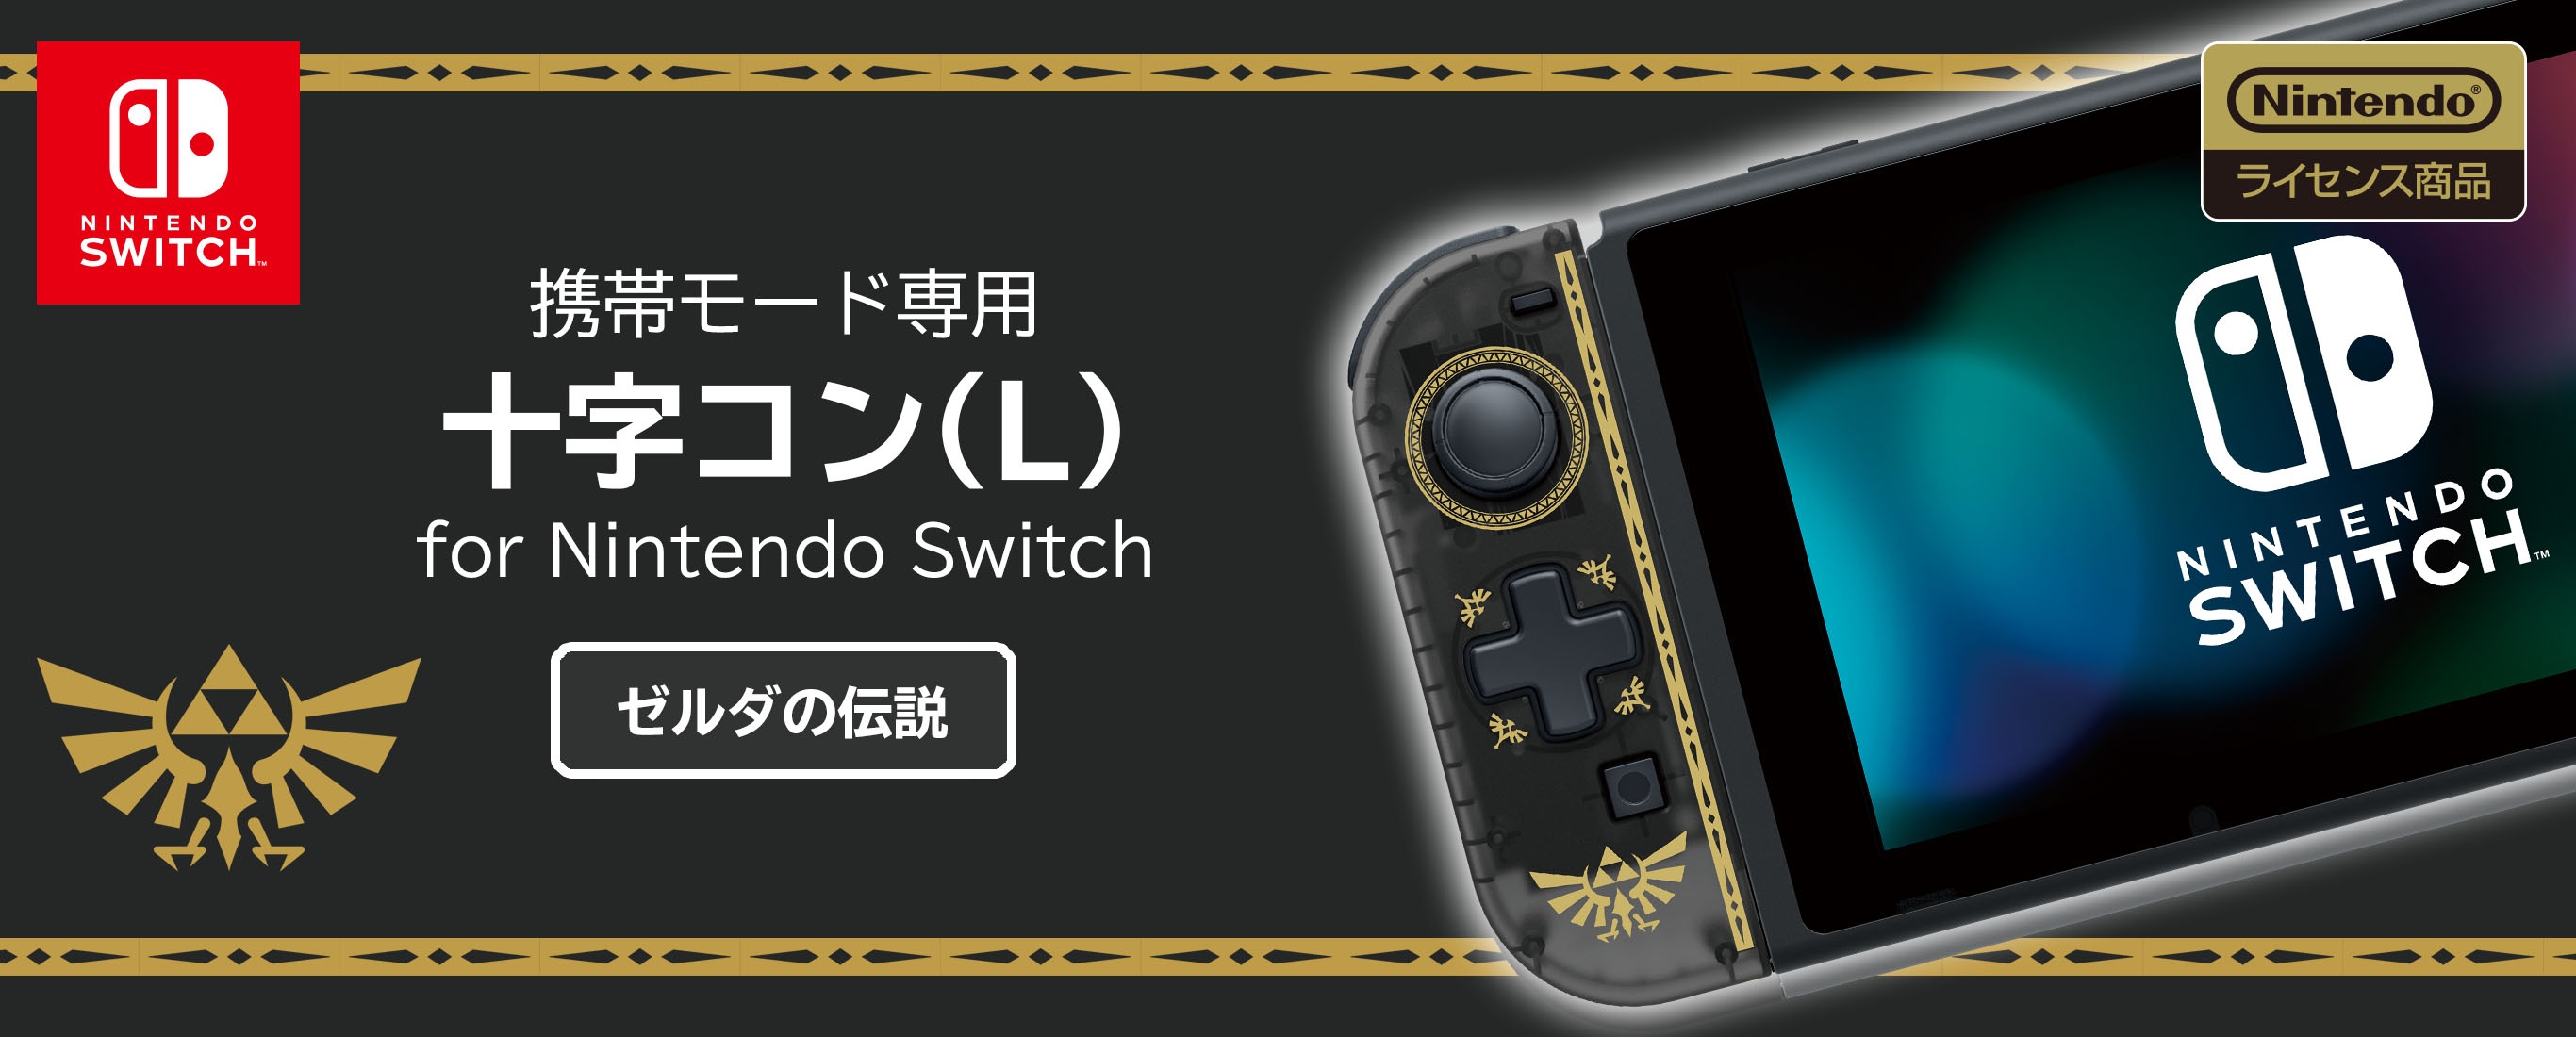 株式会社 Hori 携帯モード専用 十字コン L For Nintendo Switch ゼルダの伝説